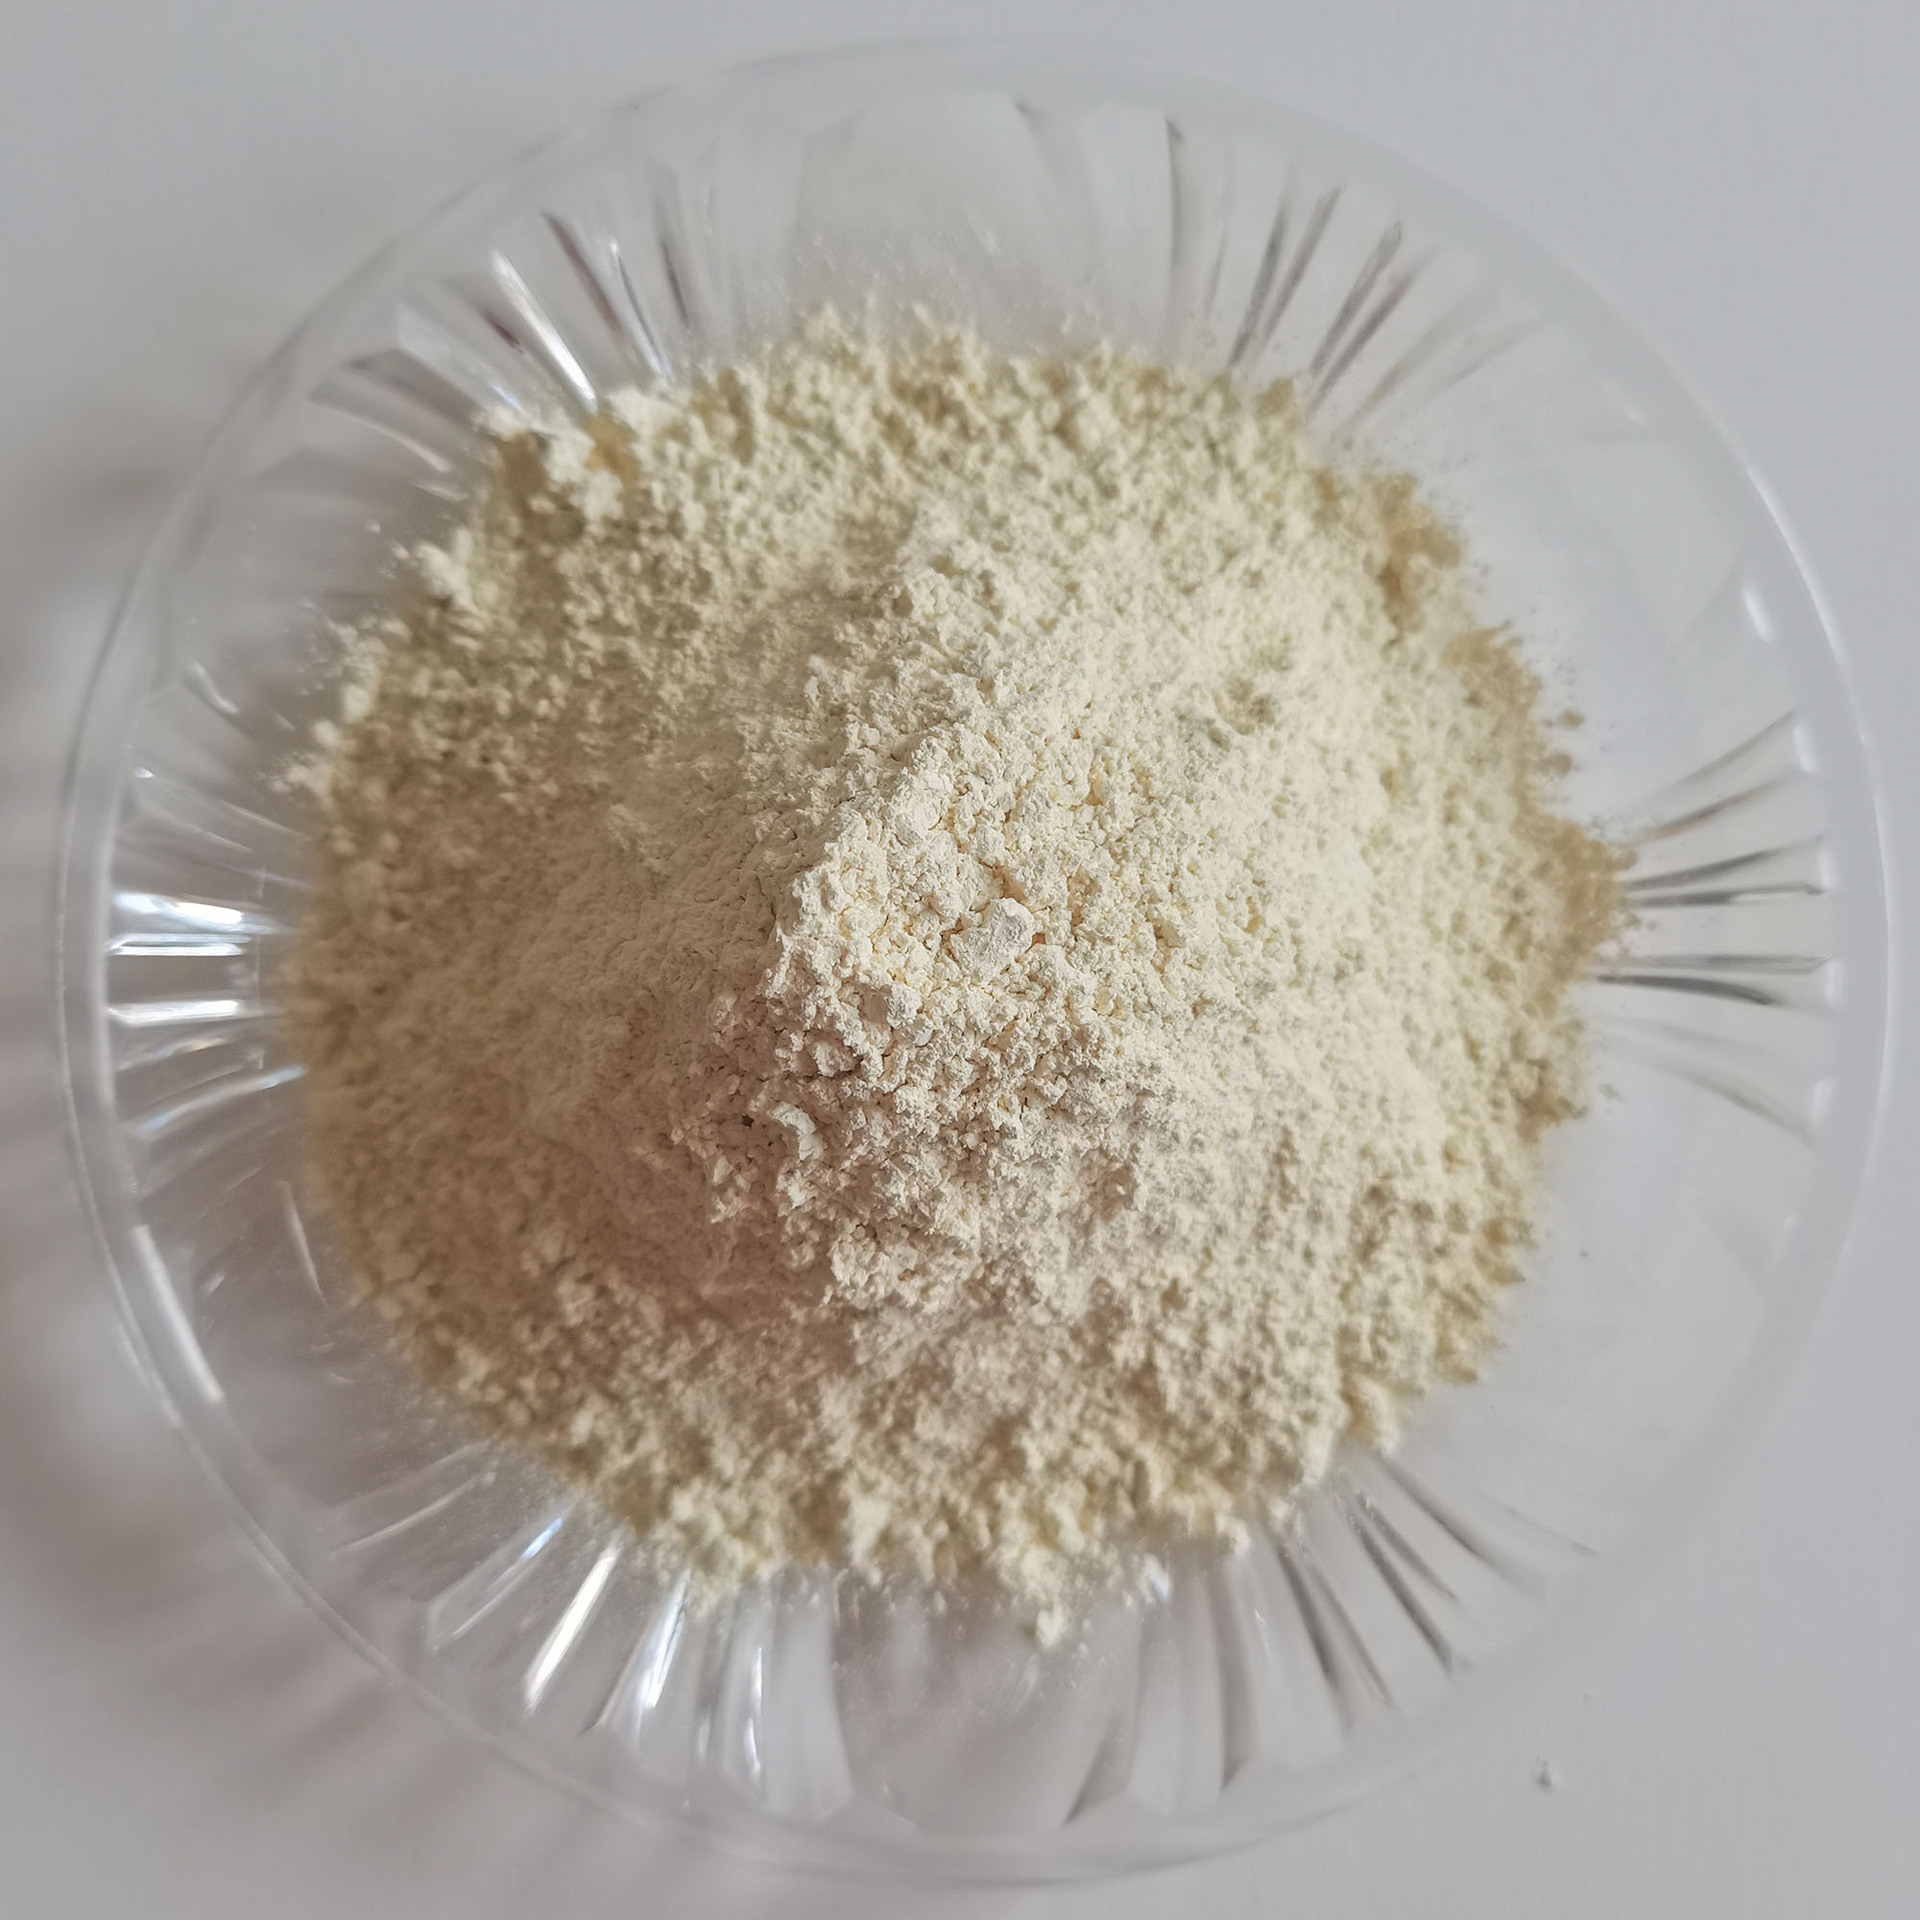 Light Yellow Cerium Oxide Powder CeO2 1306-38-3 (2)s52